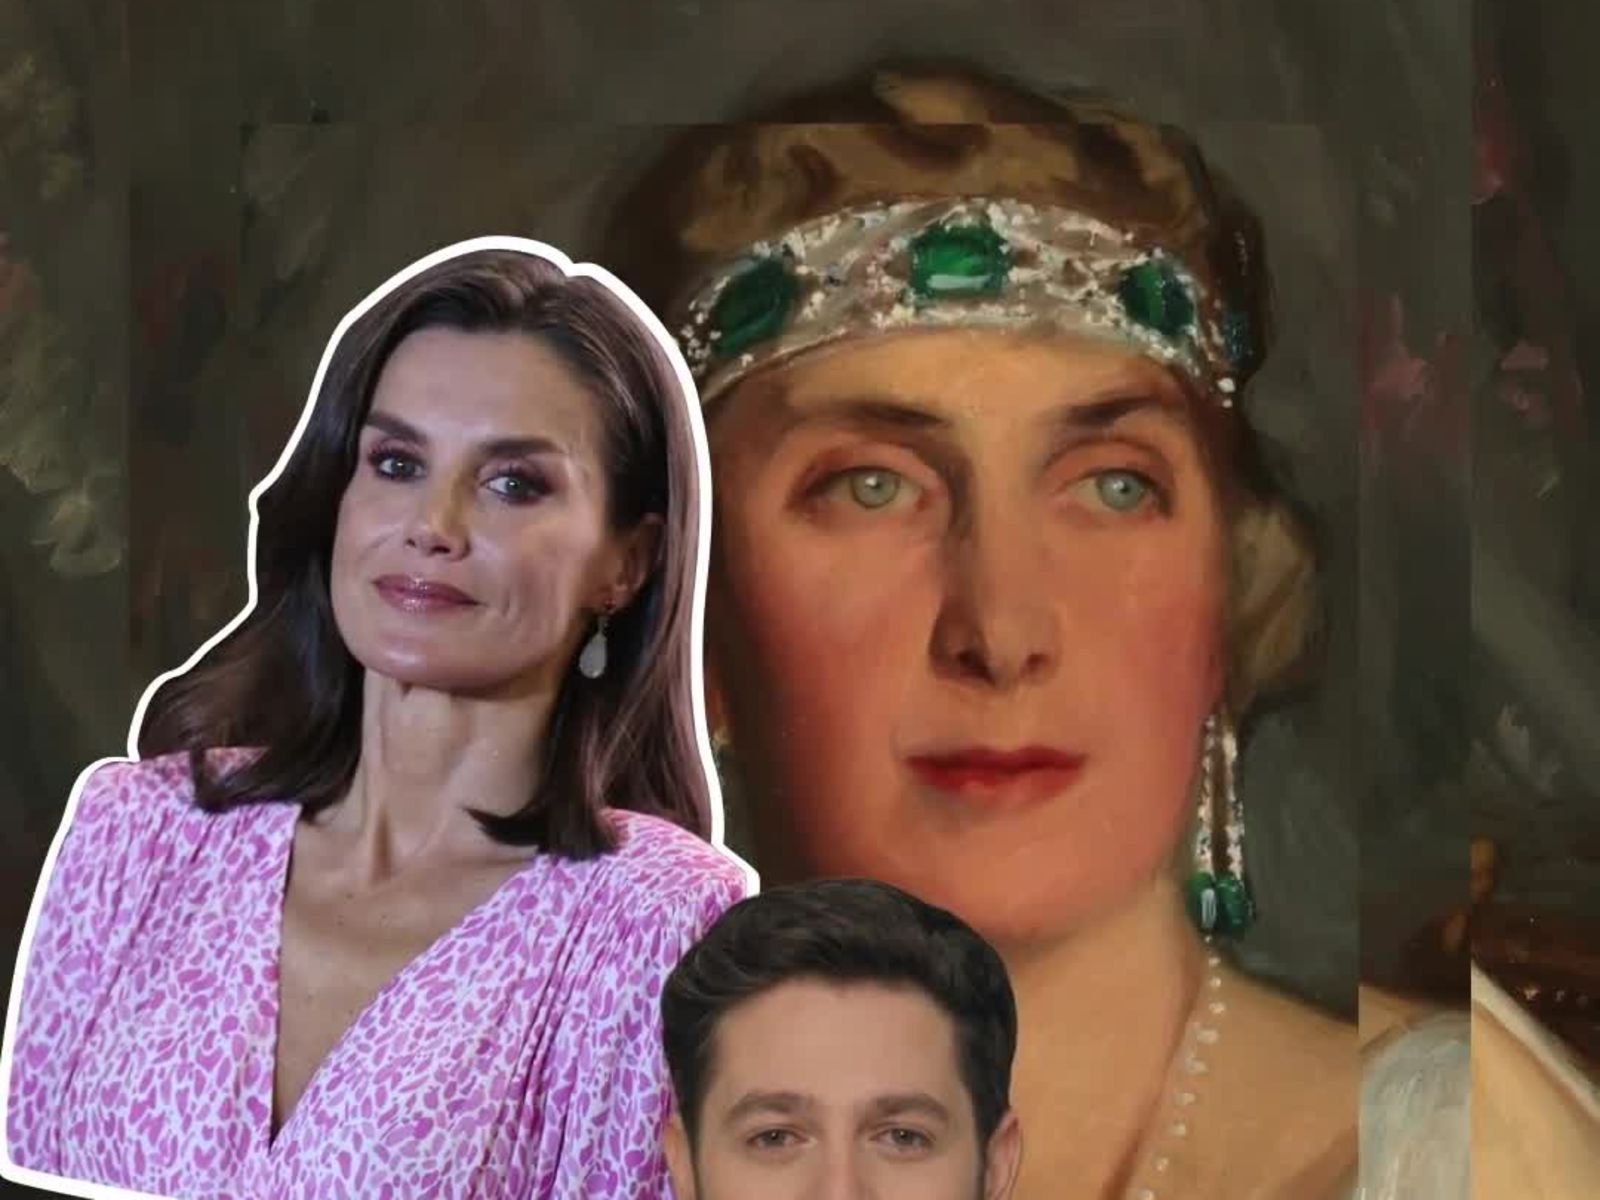 ¿Qué joya de la reina Victoria Eugenia NO luce hoy la reina Letizia? | Las cosas de Palacio